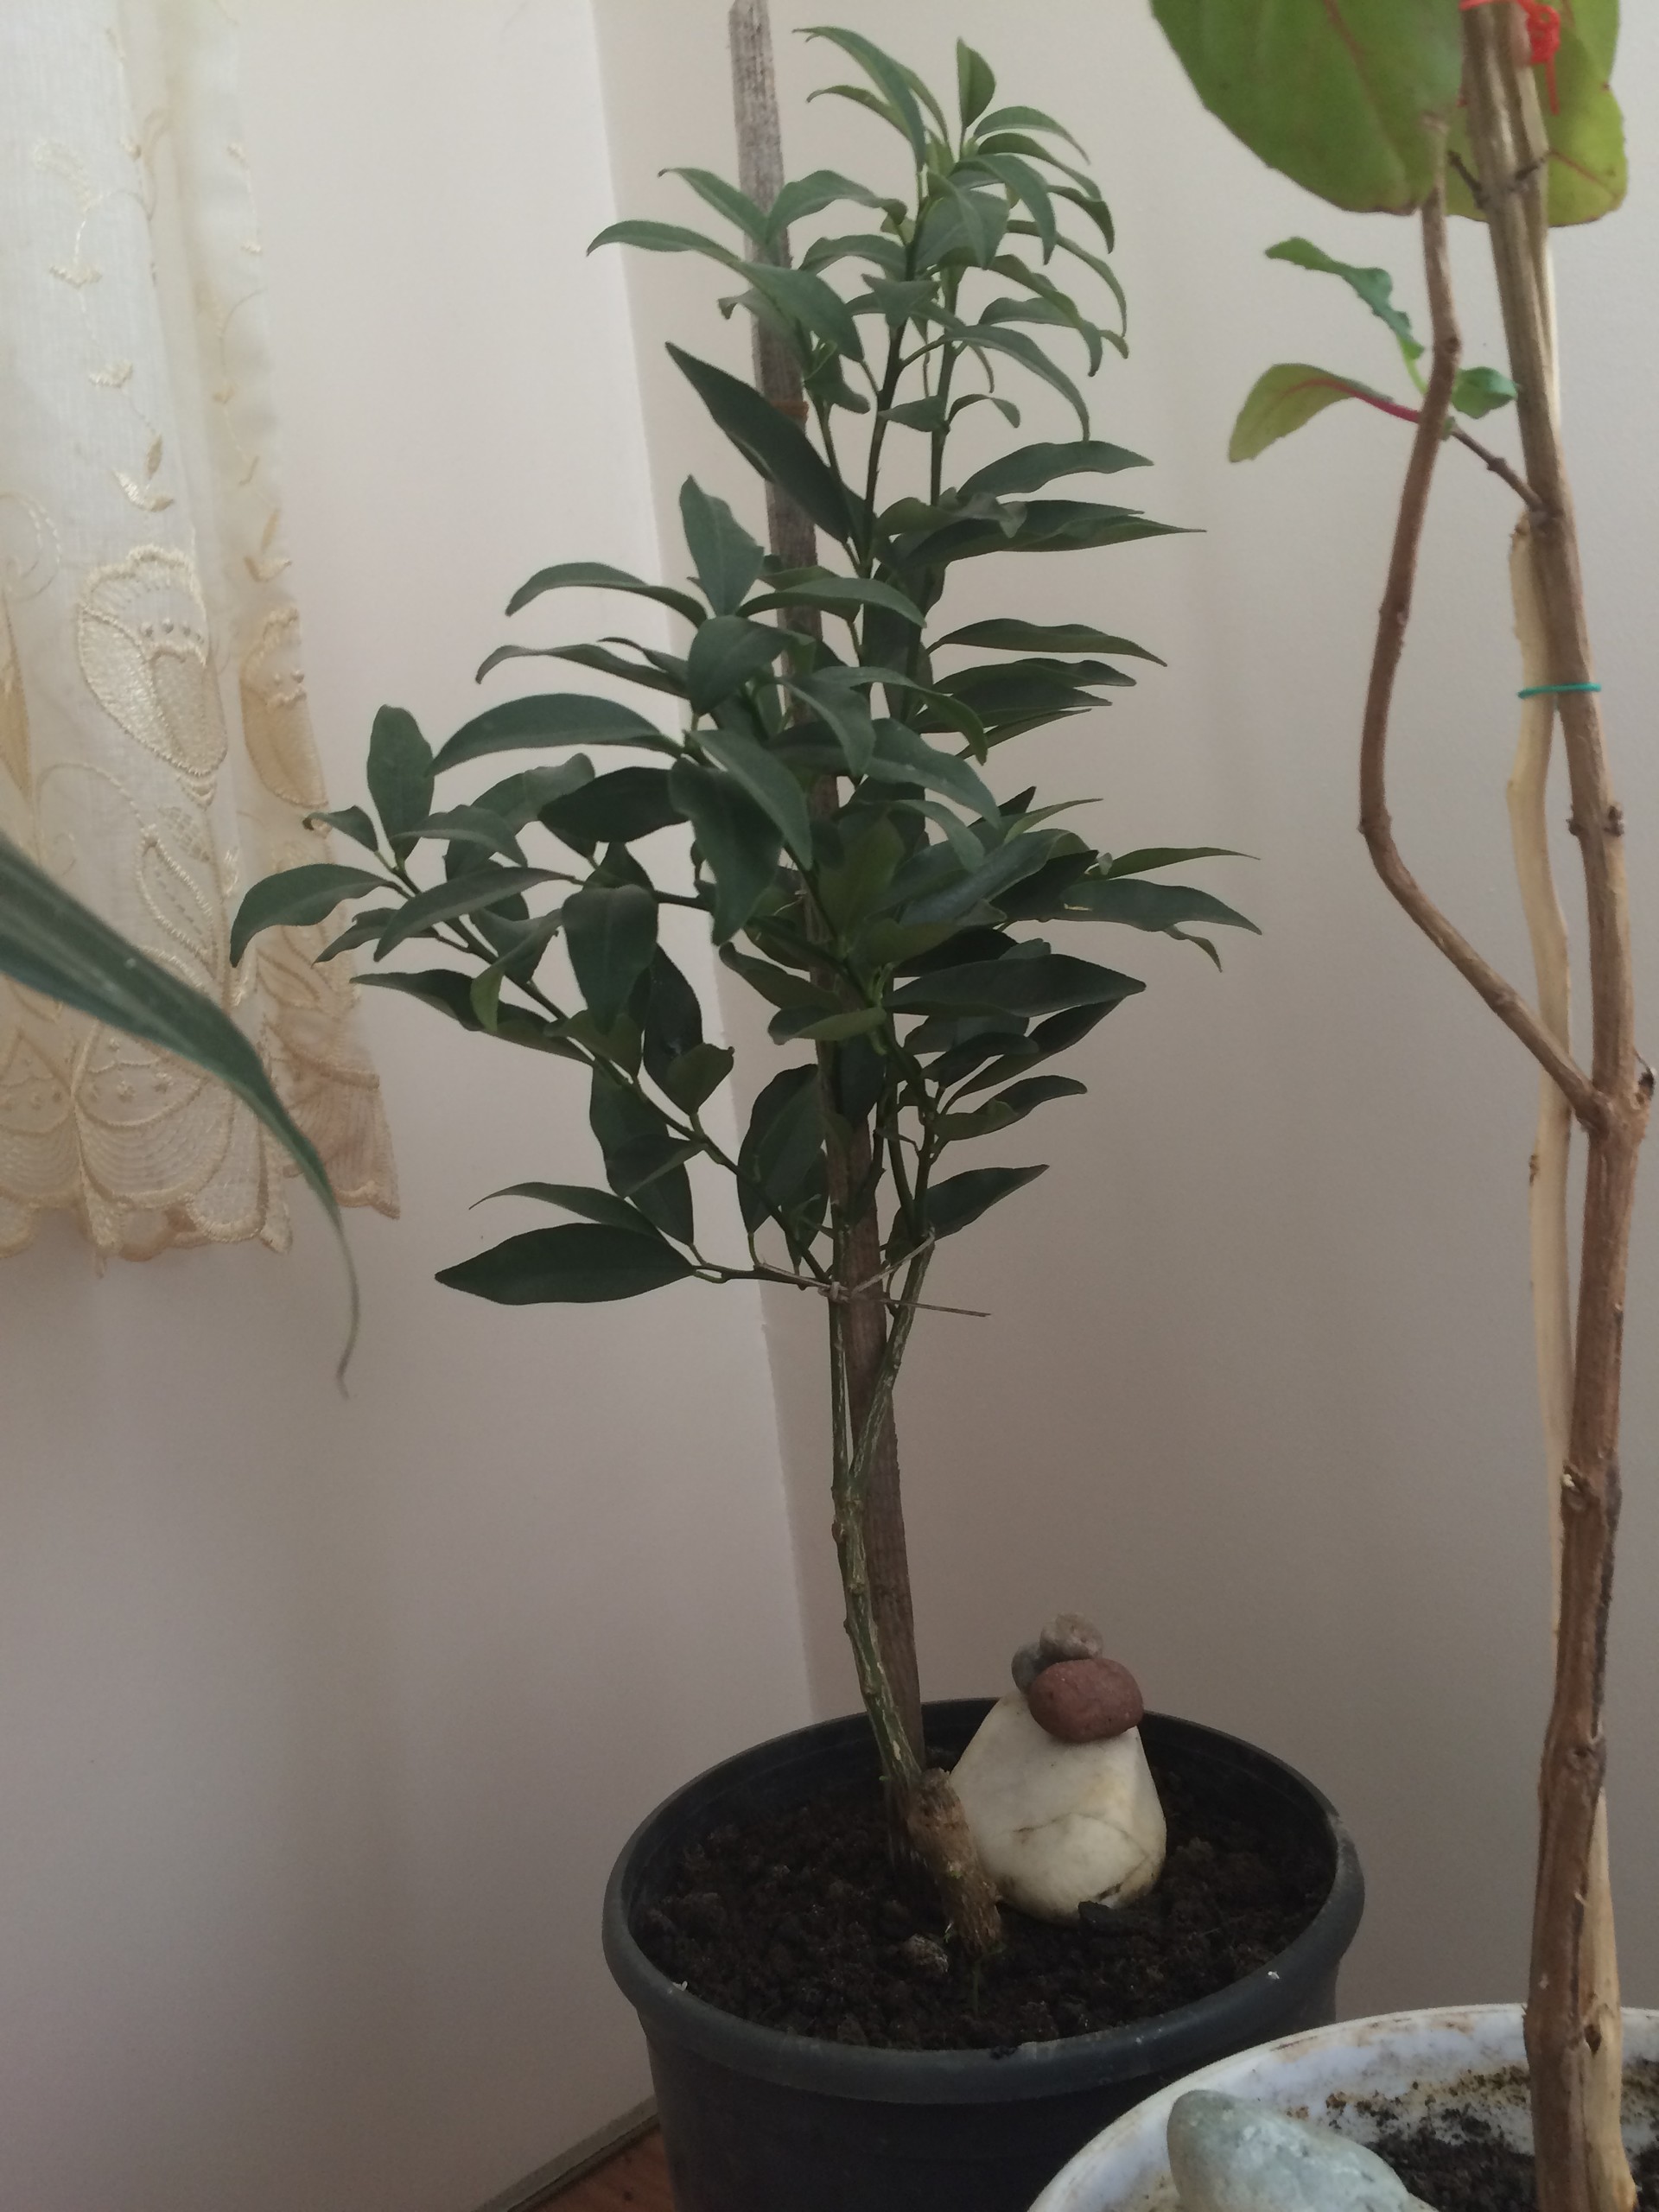 Satılık Çeşitli Bonsai ler..(Minyatür Ağaç) ve Limon Ağacı